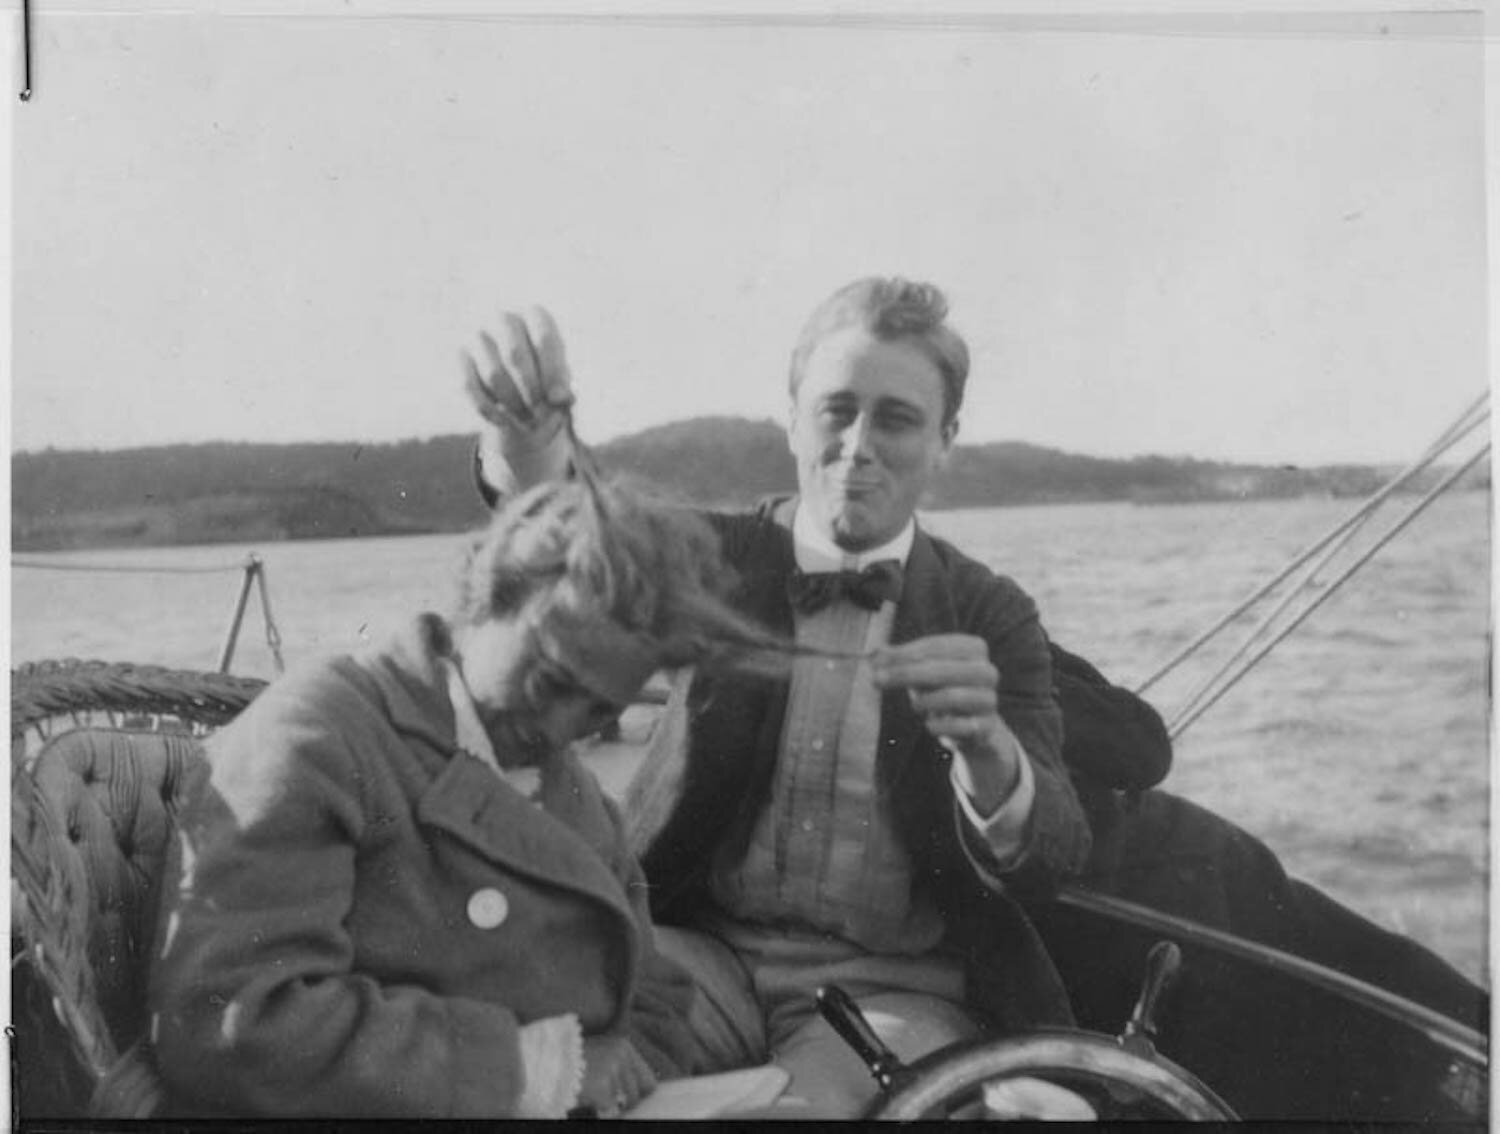 Franklin D. Roosevelt sailing with Cousin Jean Delano in Campobello, New Brunswick, Canada (1910)